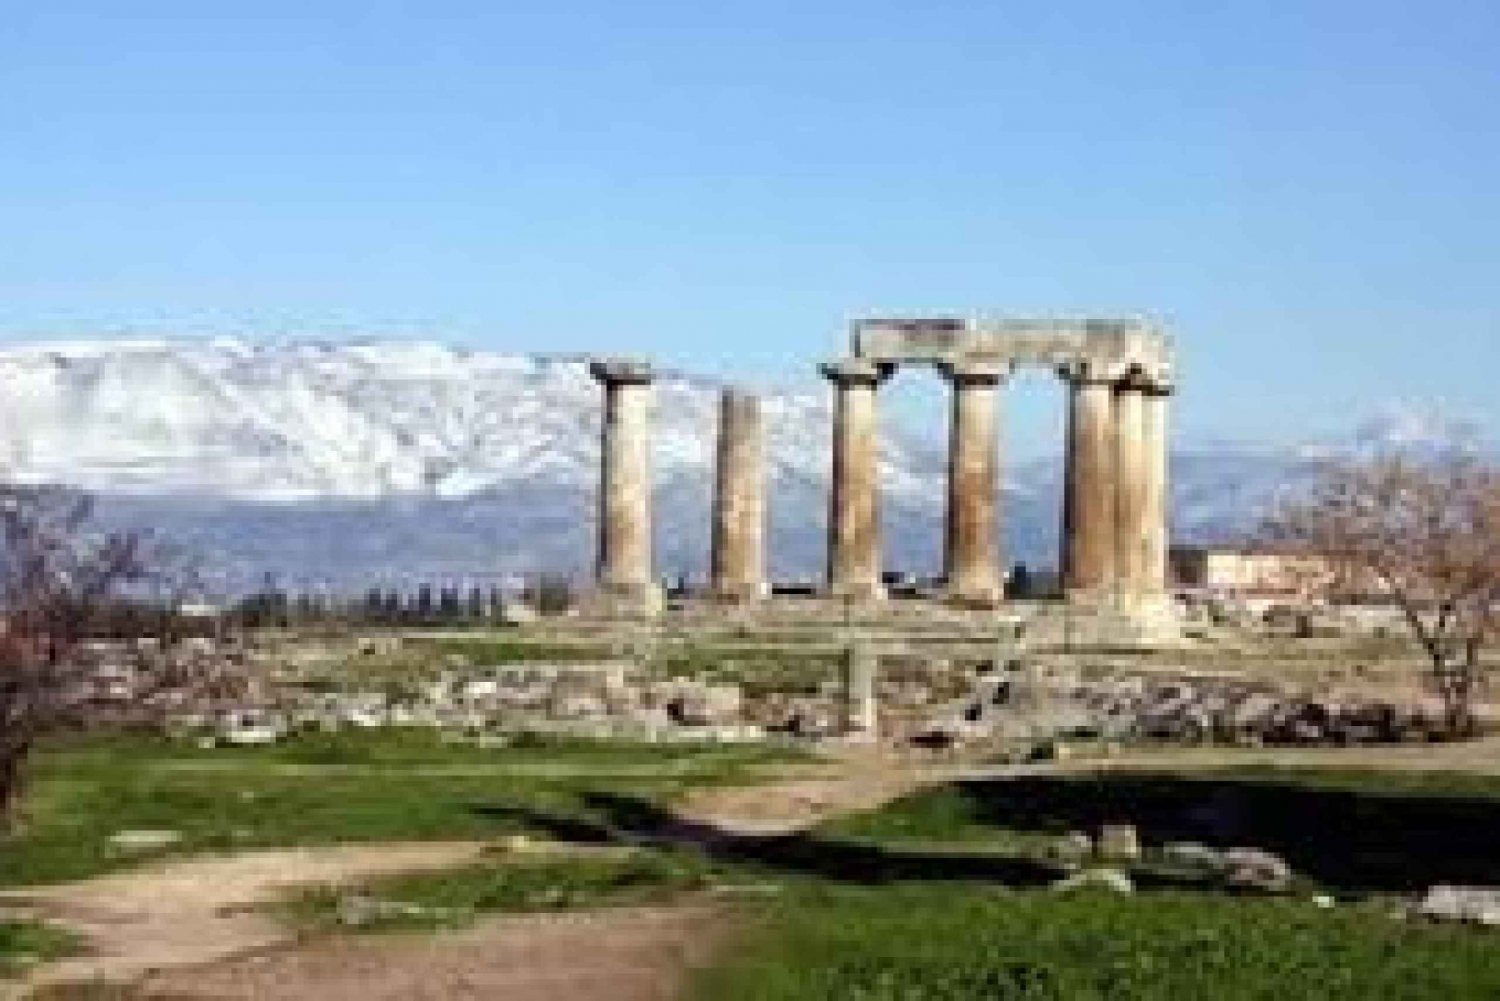 De Atenas: Tour guiado de um dia por Atenas e Corinto